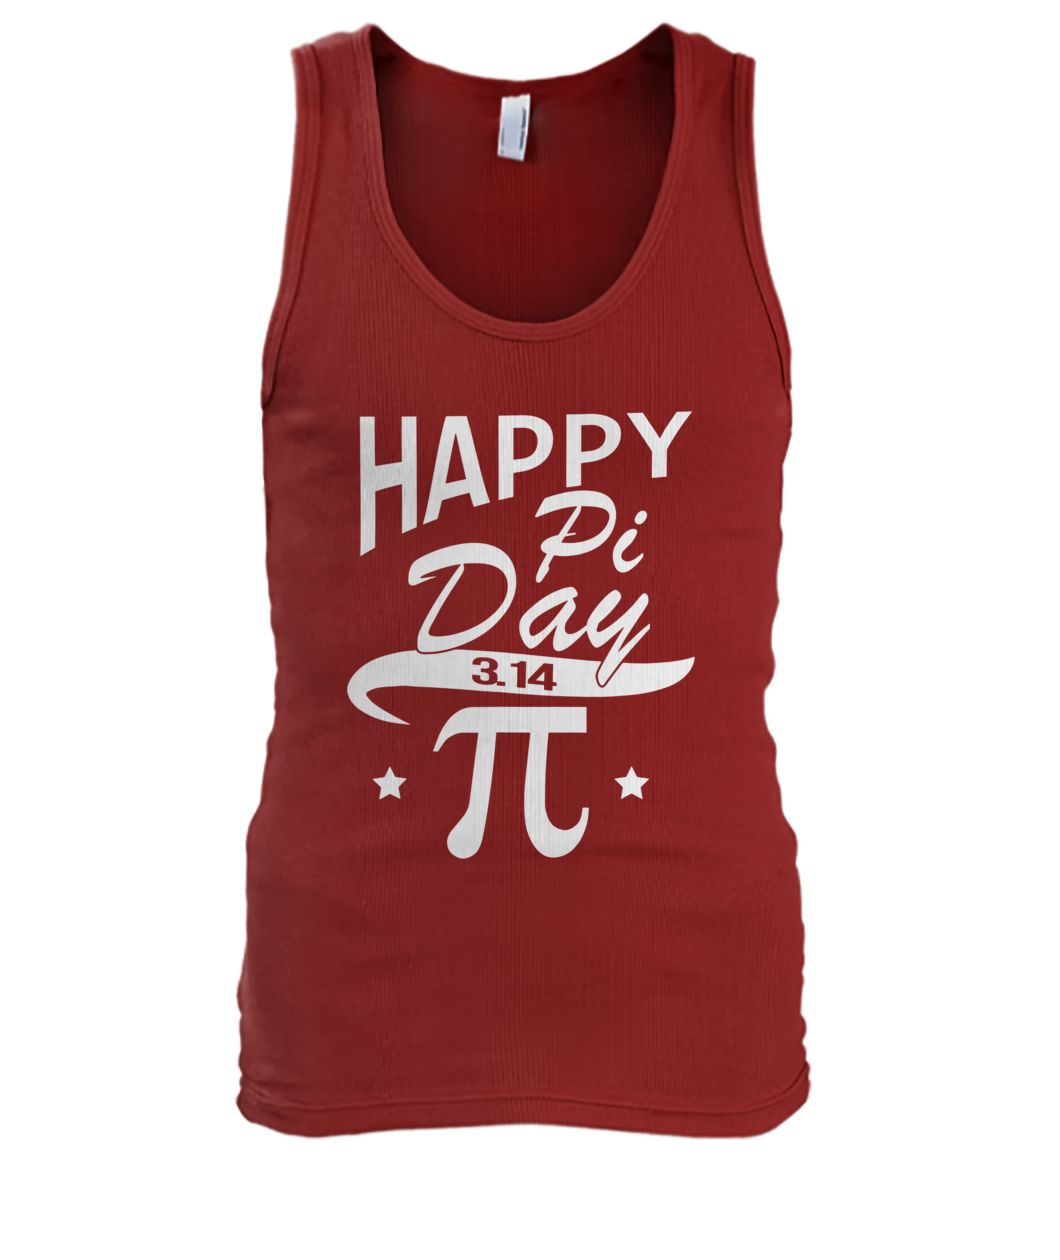 Happy pi day 3.14 for teachers professors math fan men's tank top